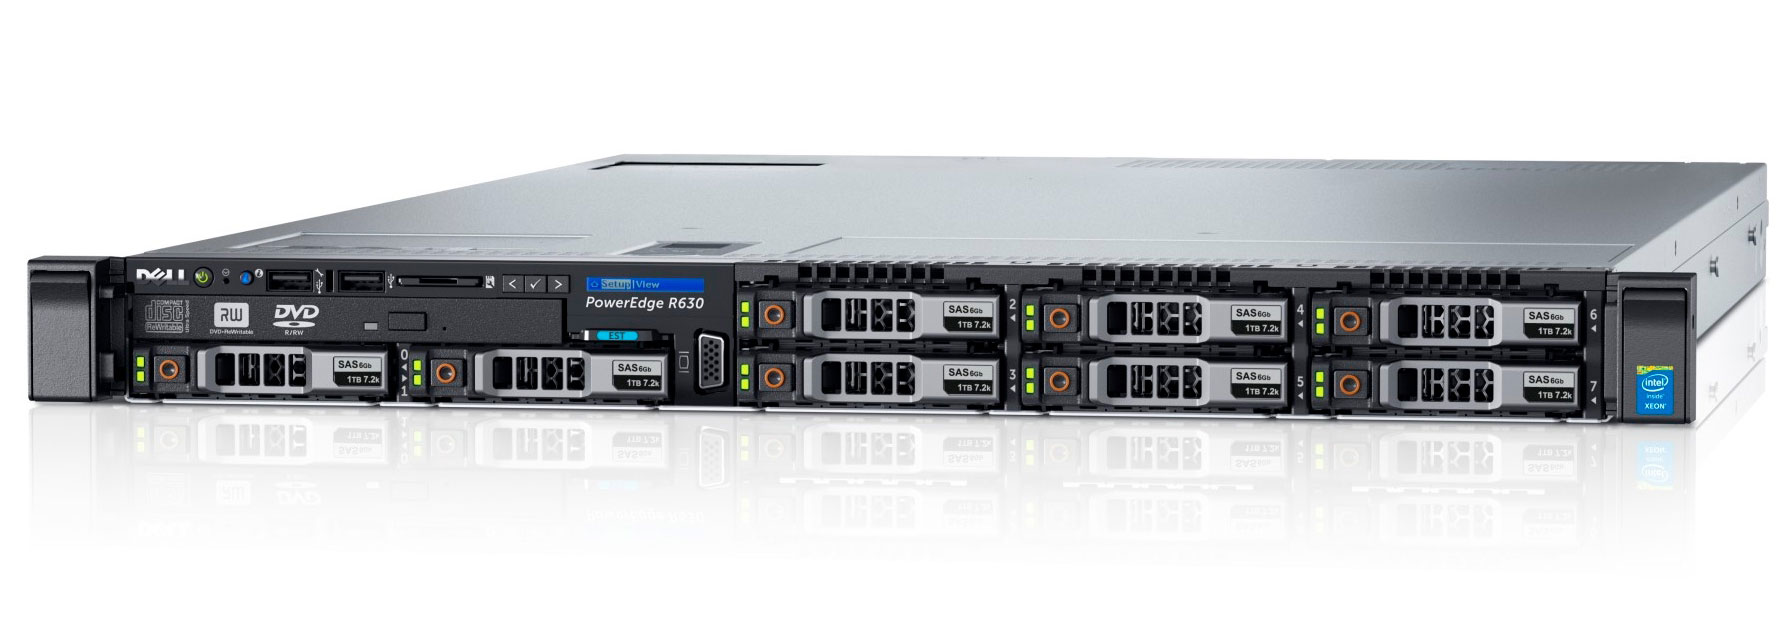 Подробное фото Сервер DELL PowerEdge R630 2*Xeon E5-2620v3 64Gb 2133P DDR4 8x noHDD 2.5" SAS RAID Perc H730, 2*PSU